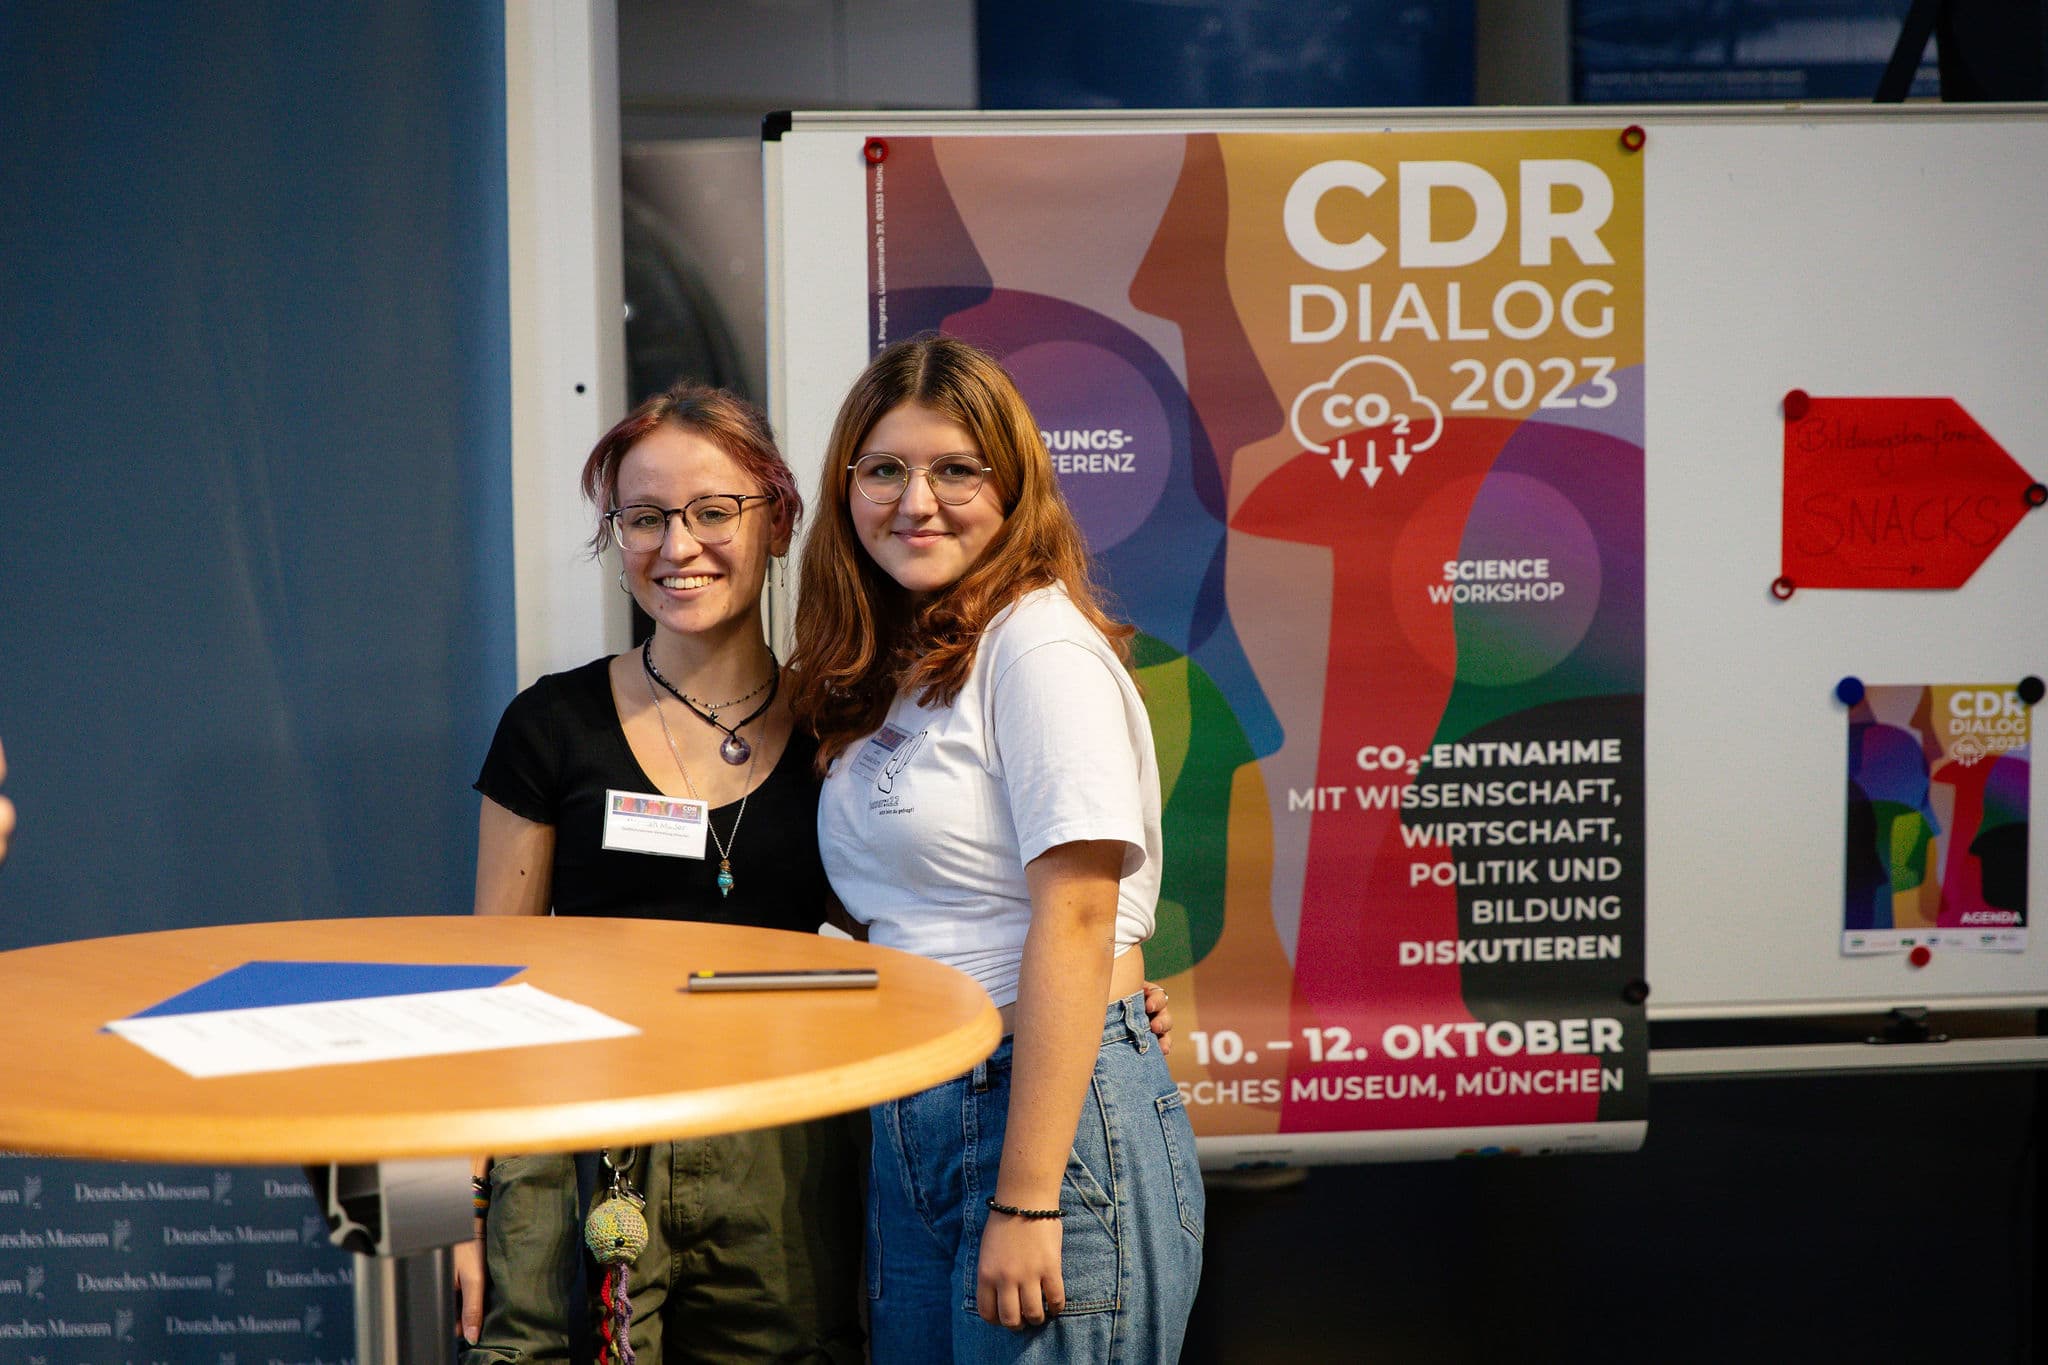 CDRterra-Sprecherin Prof. Dr. Julia Pongratz bei der CDR-Bildungskonferenz Quelle: CDRterra, Domagoj Starcevic Photography